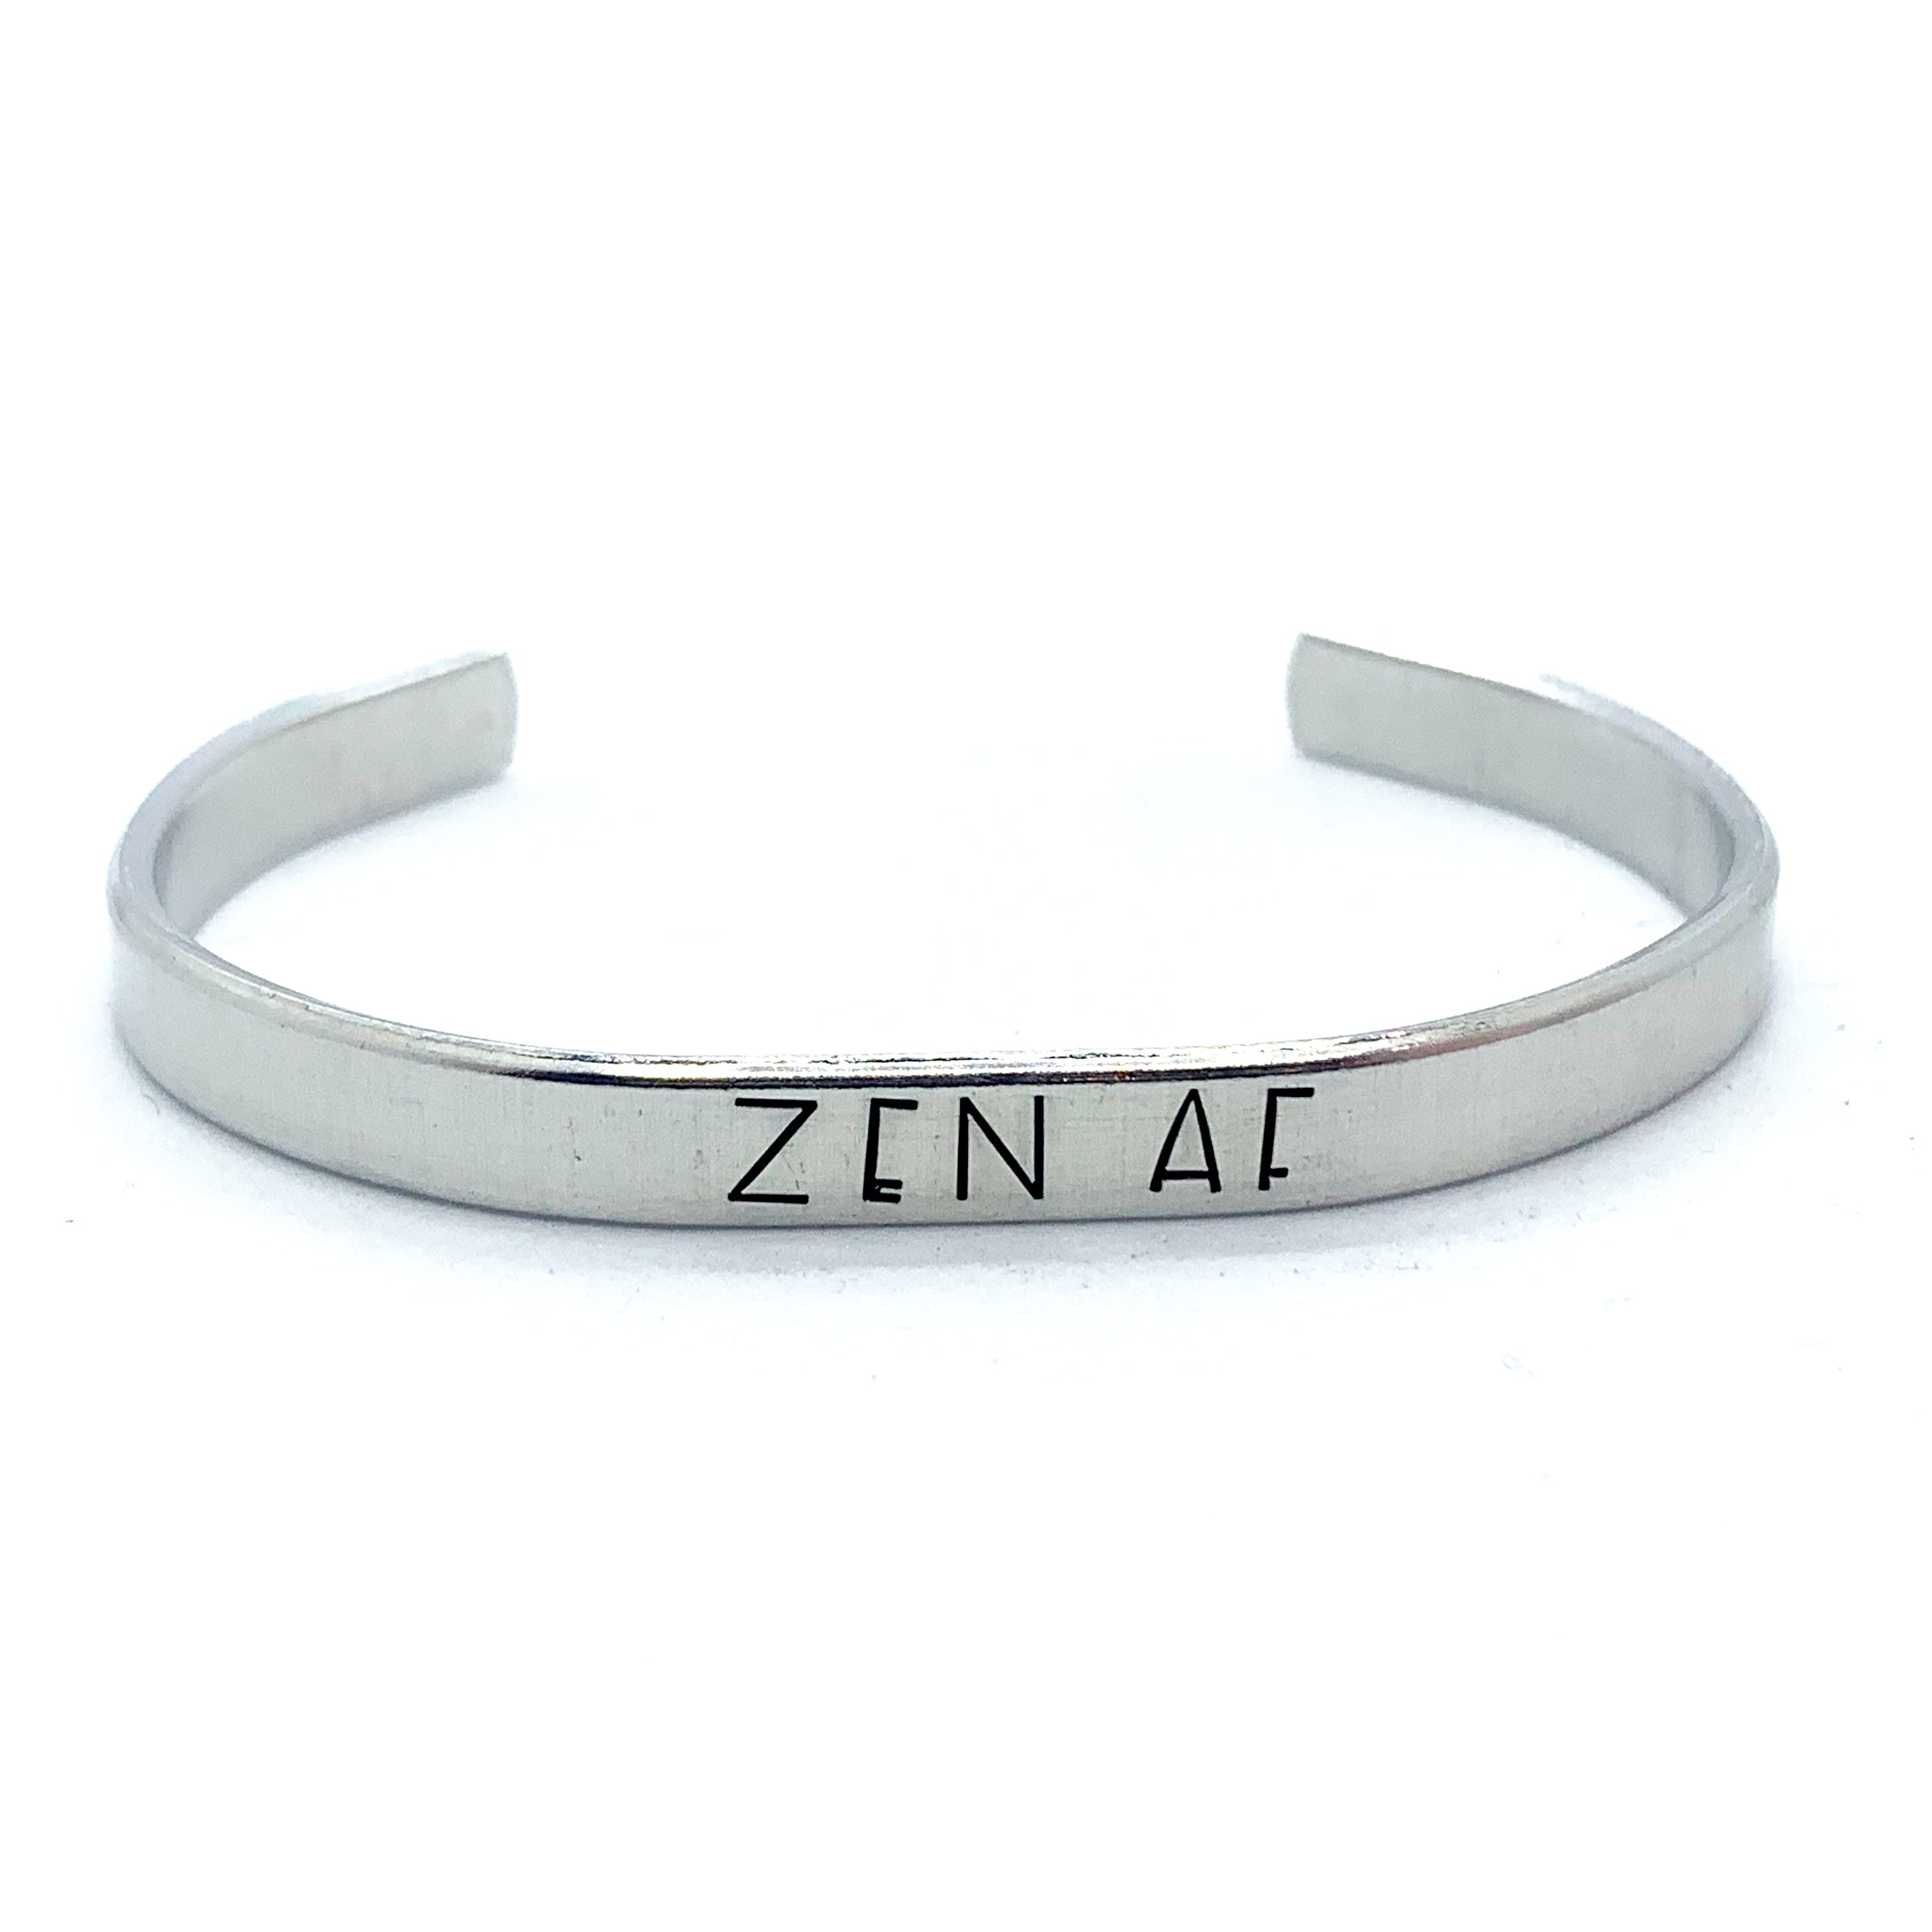 ¼ inch Aluminum Cuff - Zen AF